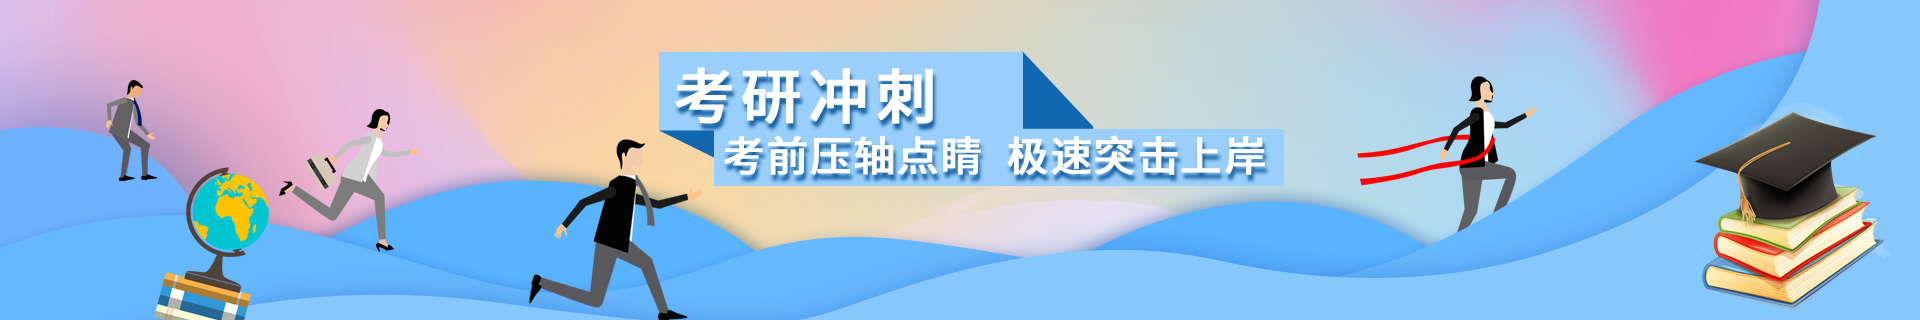 上海杨浦跨考教育培训机构